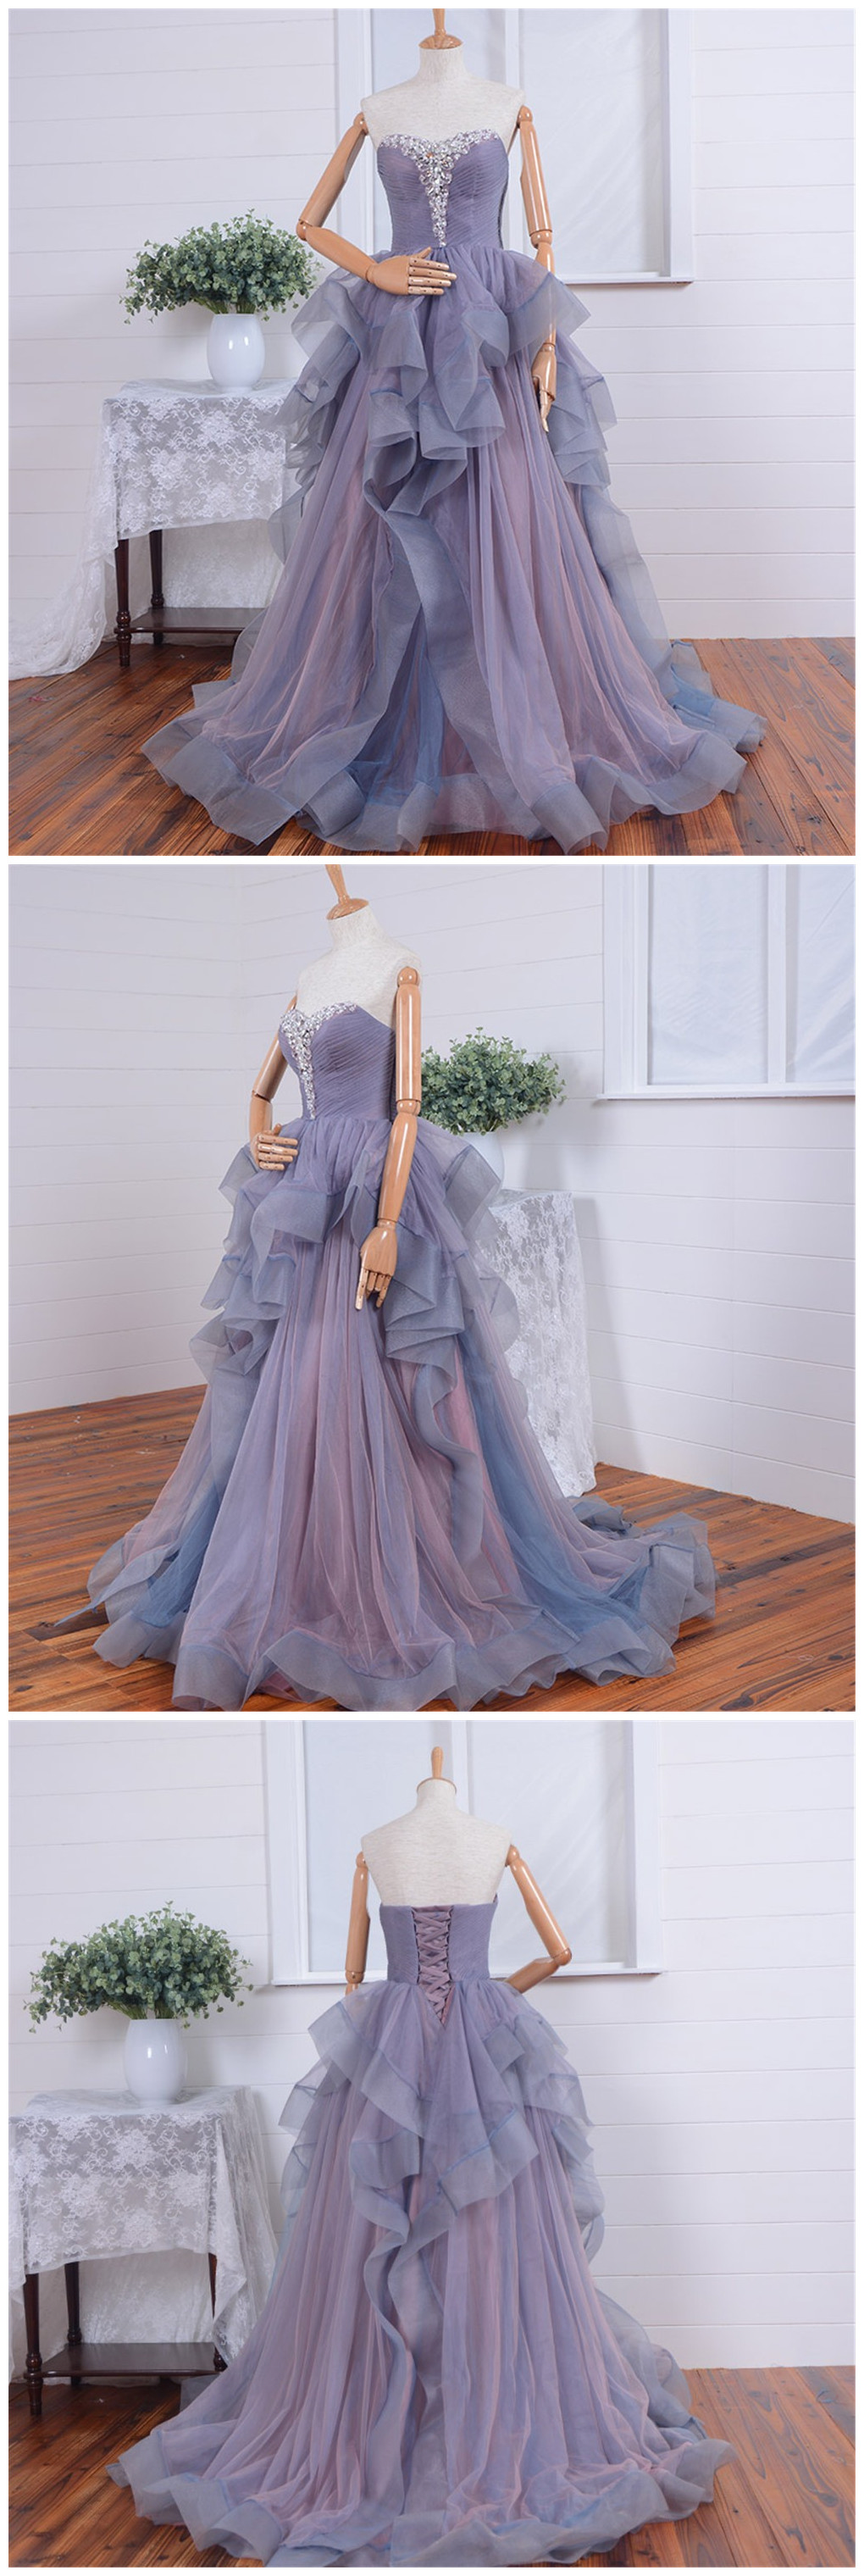 Real Long prom dress 2017 Elegant Puffy vestido de festa Crystal Beaded Tulle Women prom dresses